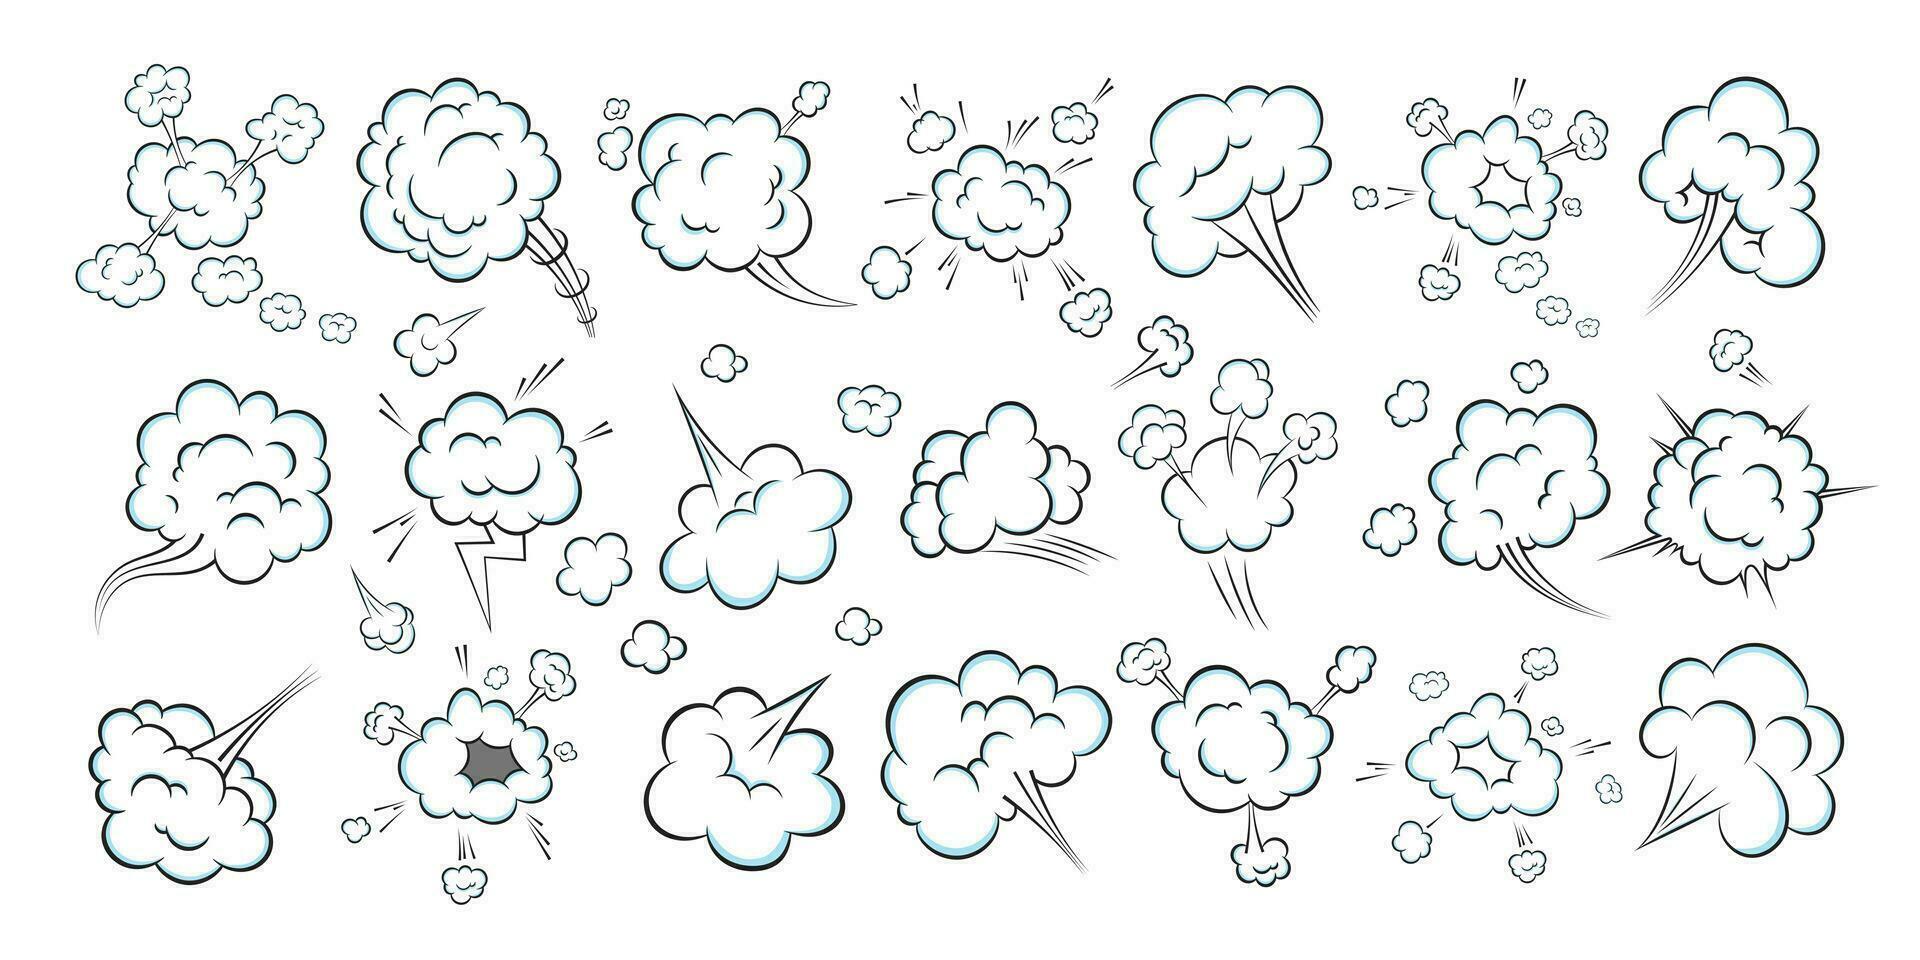 ruikende popart stripboek cartoon fart cloud vlakke stijl vector illustratie ontwerpset.